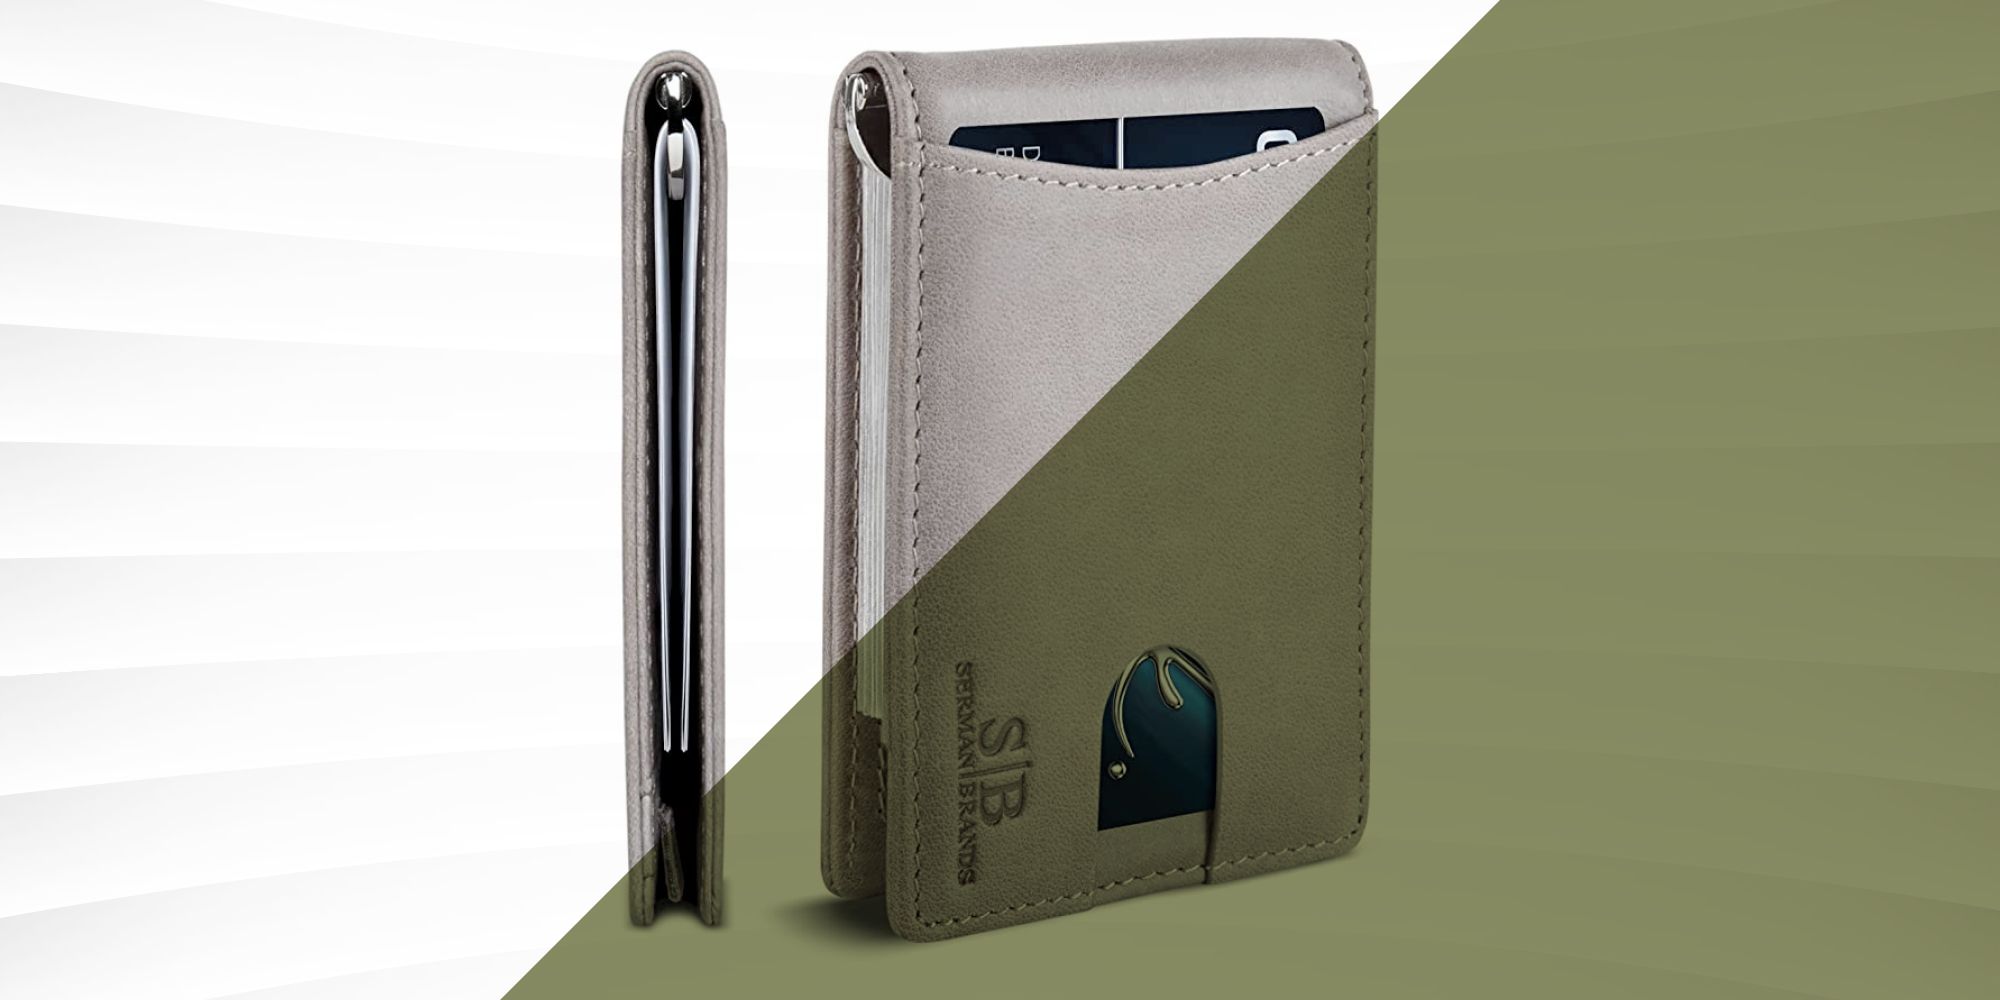 VULKIT Pop Up Wallet Slim RFID Blocking Metal Card Case holder Trifold Leather Pocket Wallet 